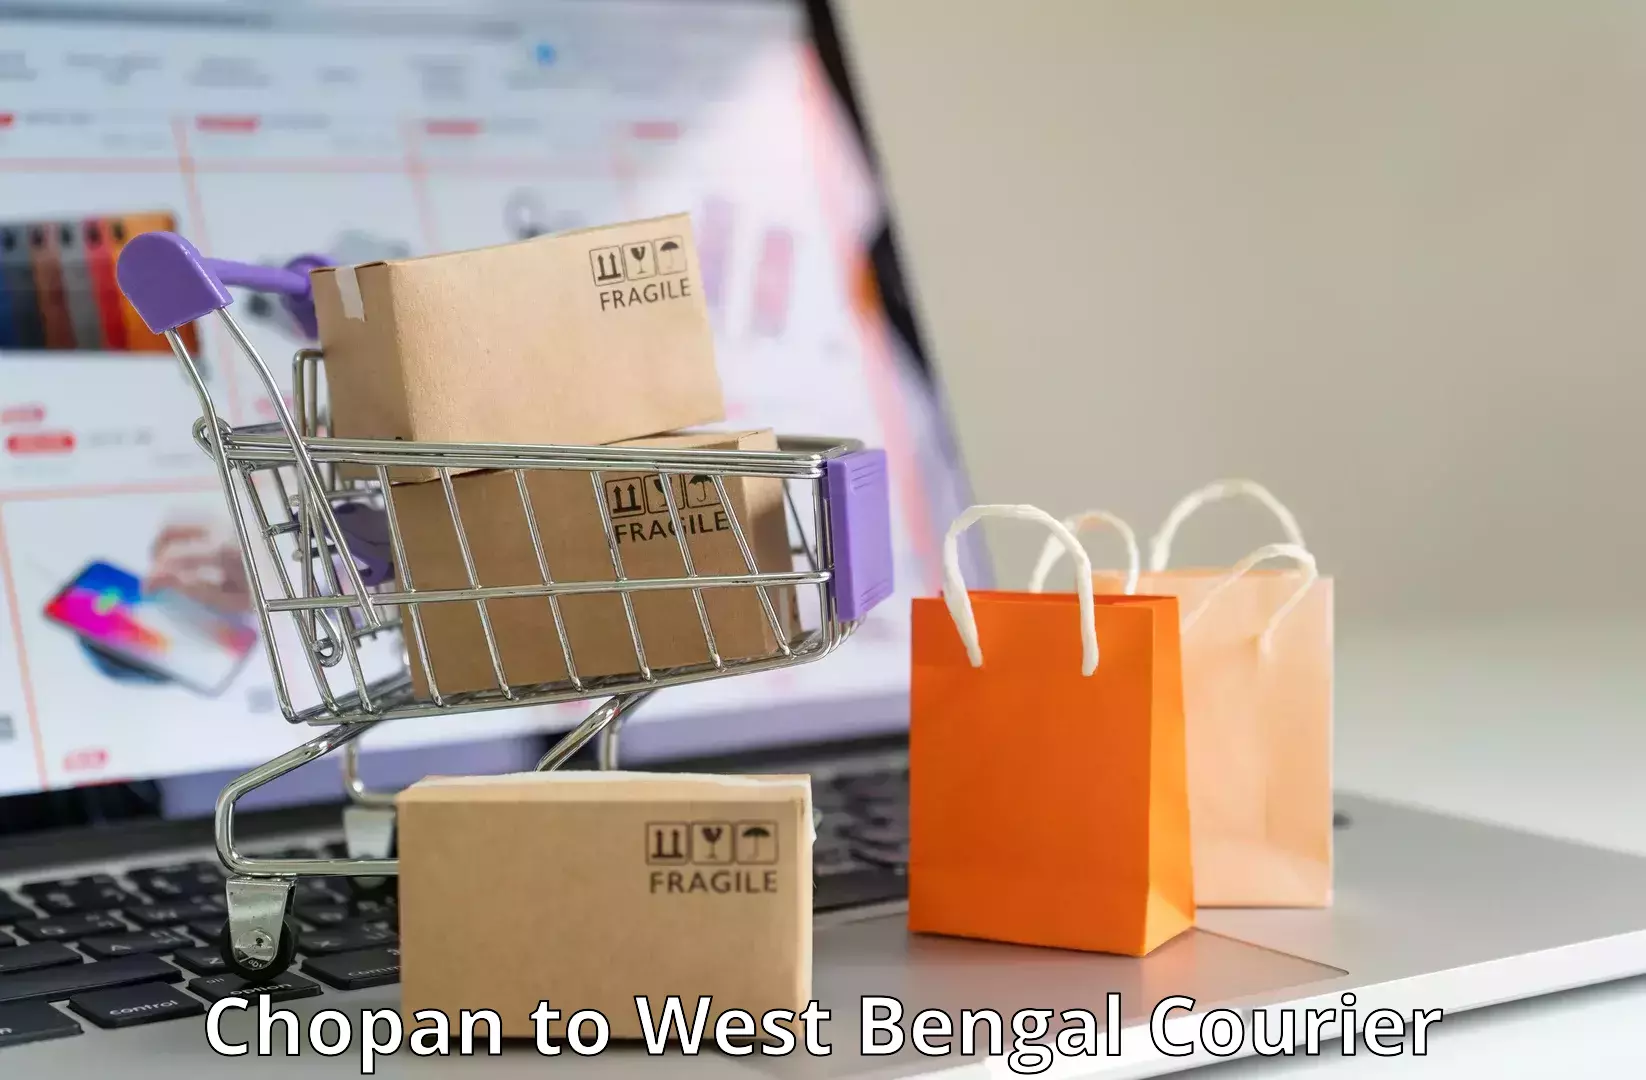 Flexible parcel services Chopan to Barasat